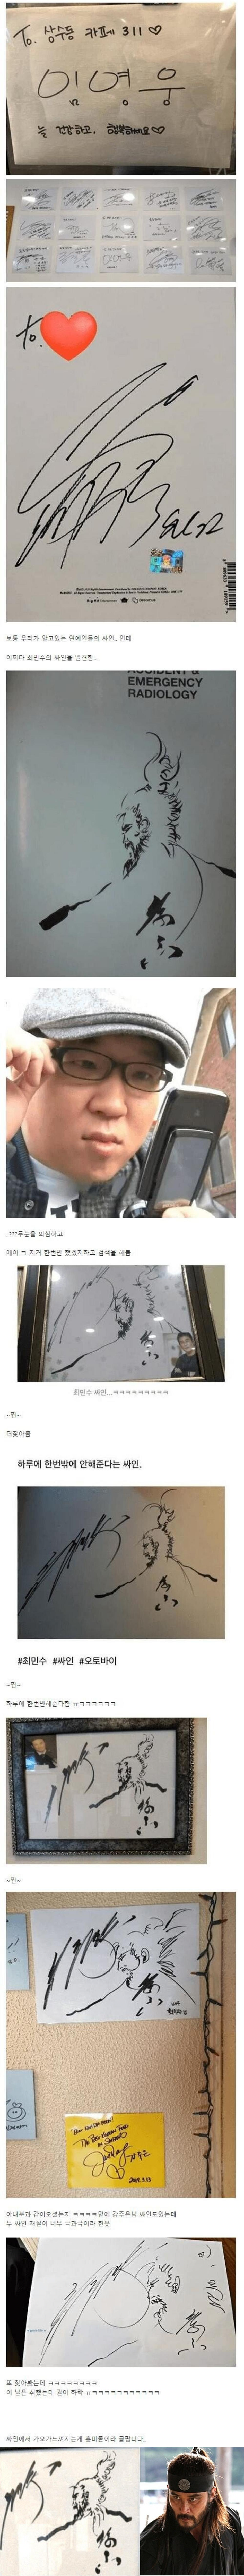 가오가 육신을 지배한 연예인 싸인.png.jpg